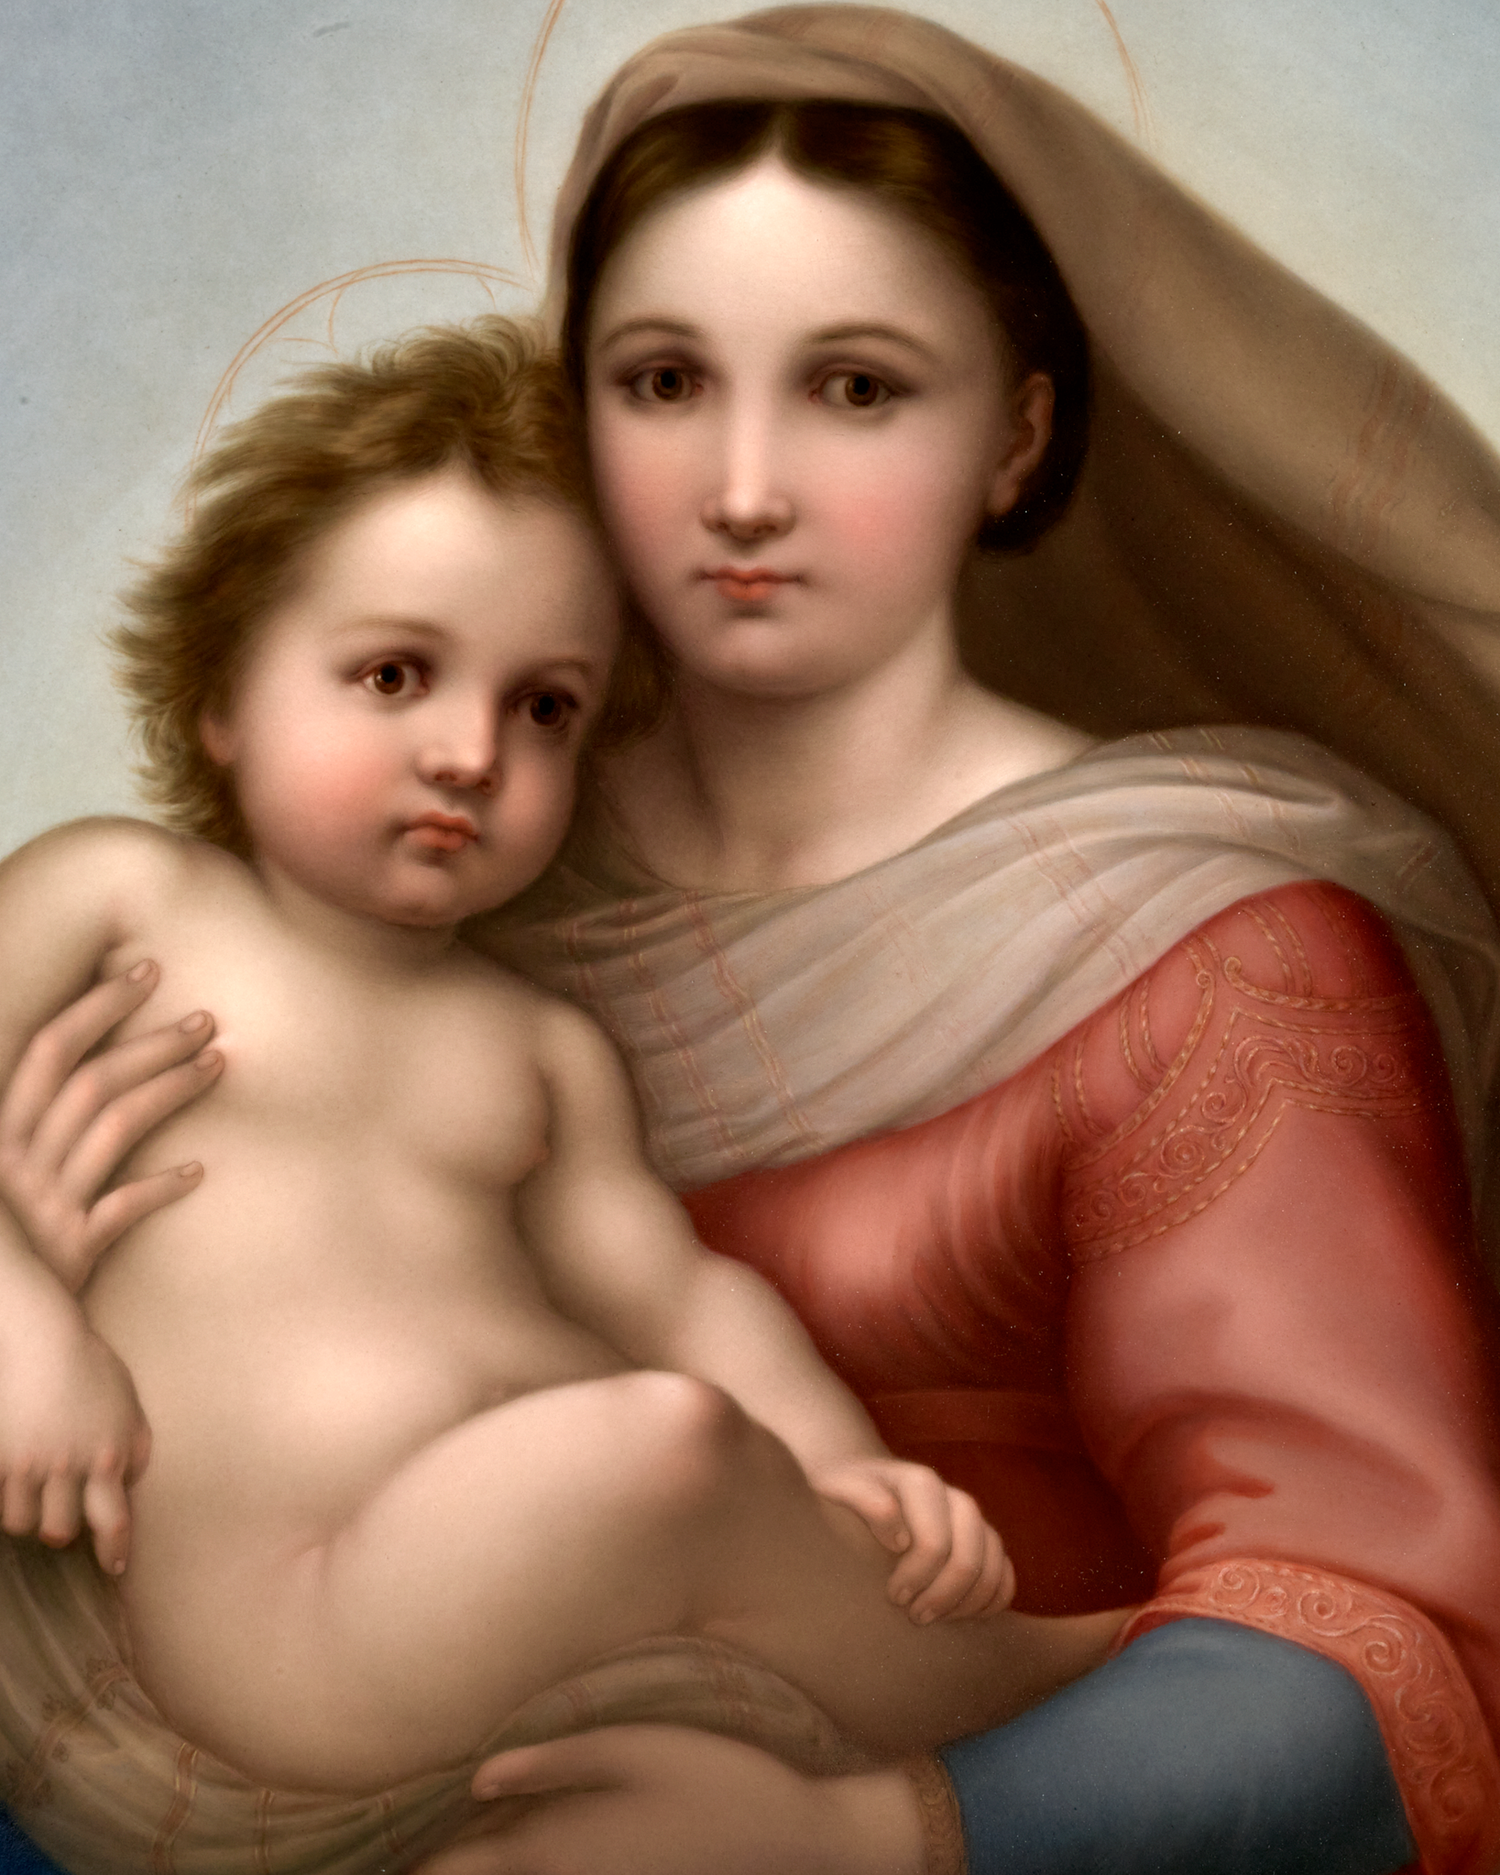 The Sistine Madonna Porcelain Plaque by KPM